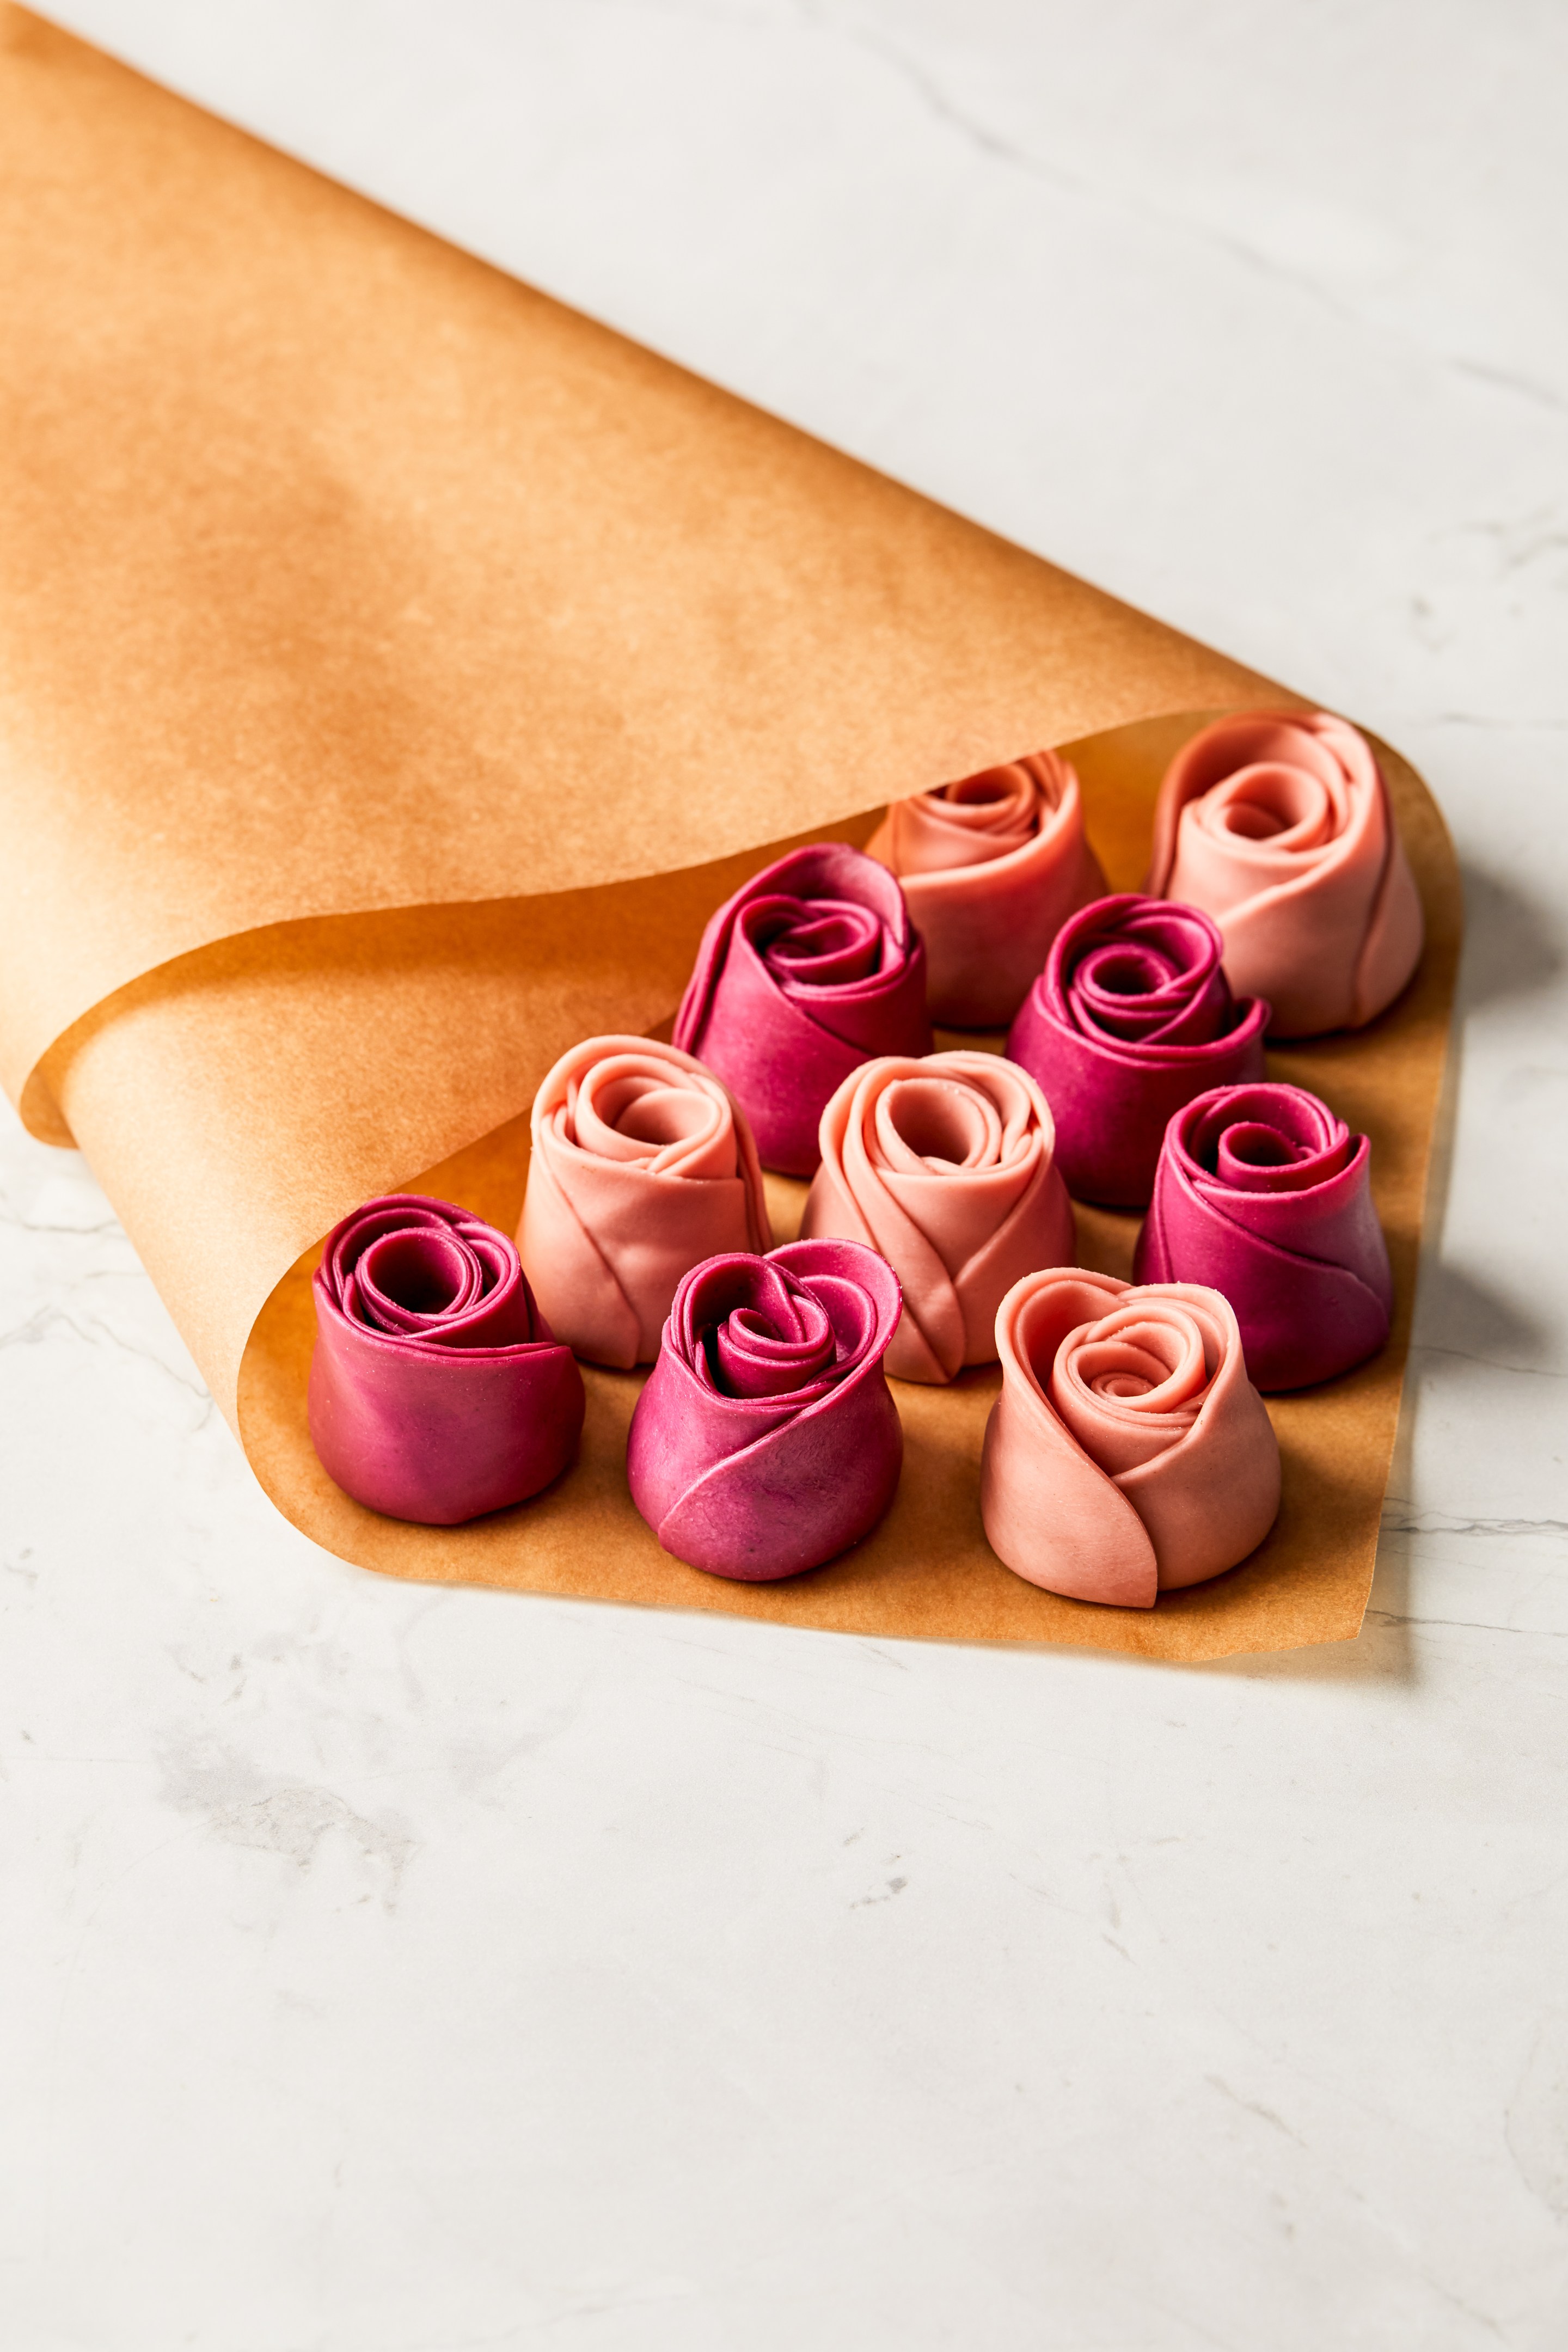 Rose-shaped ravioli on butcher paper